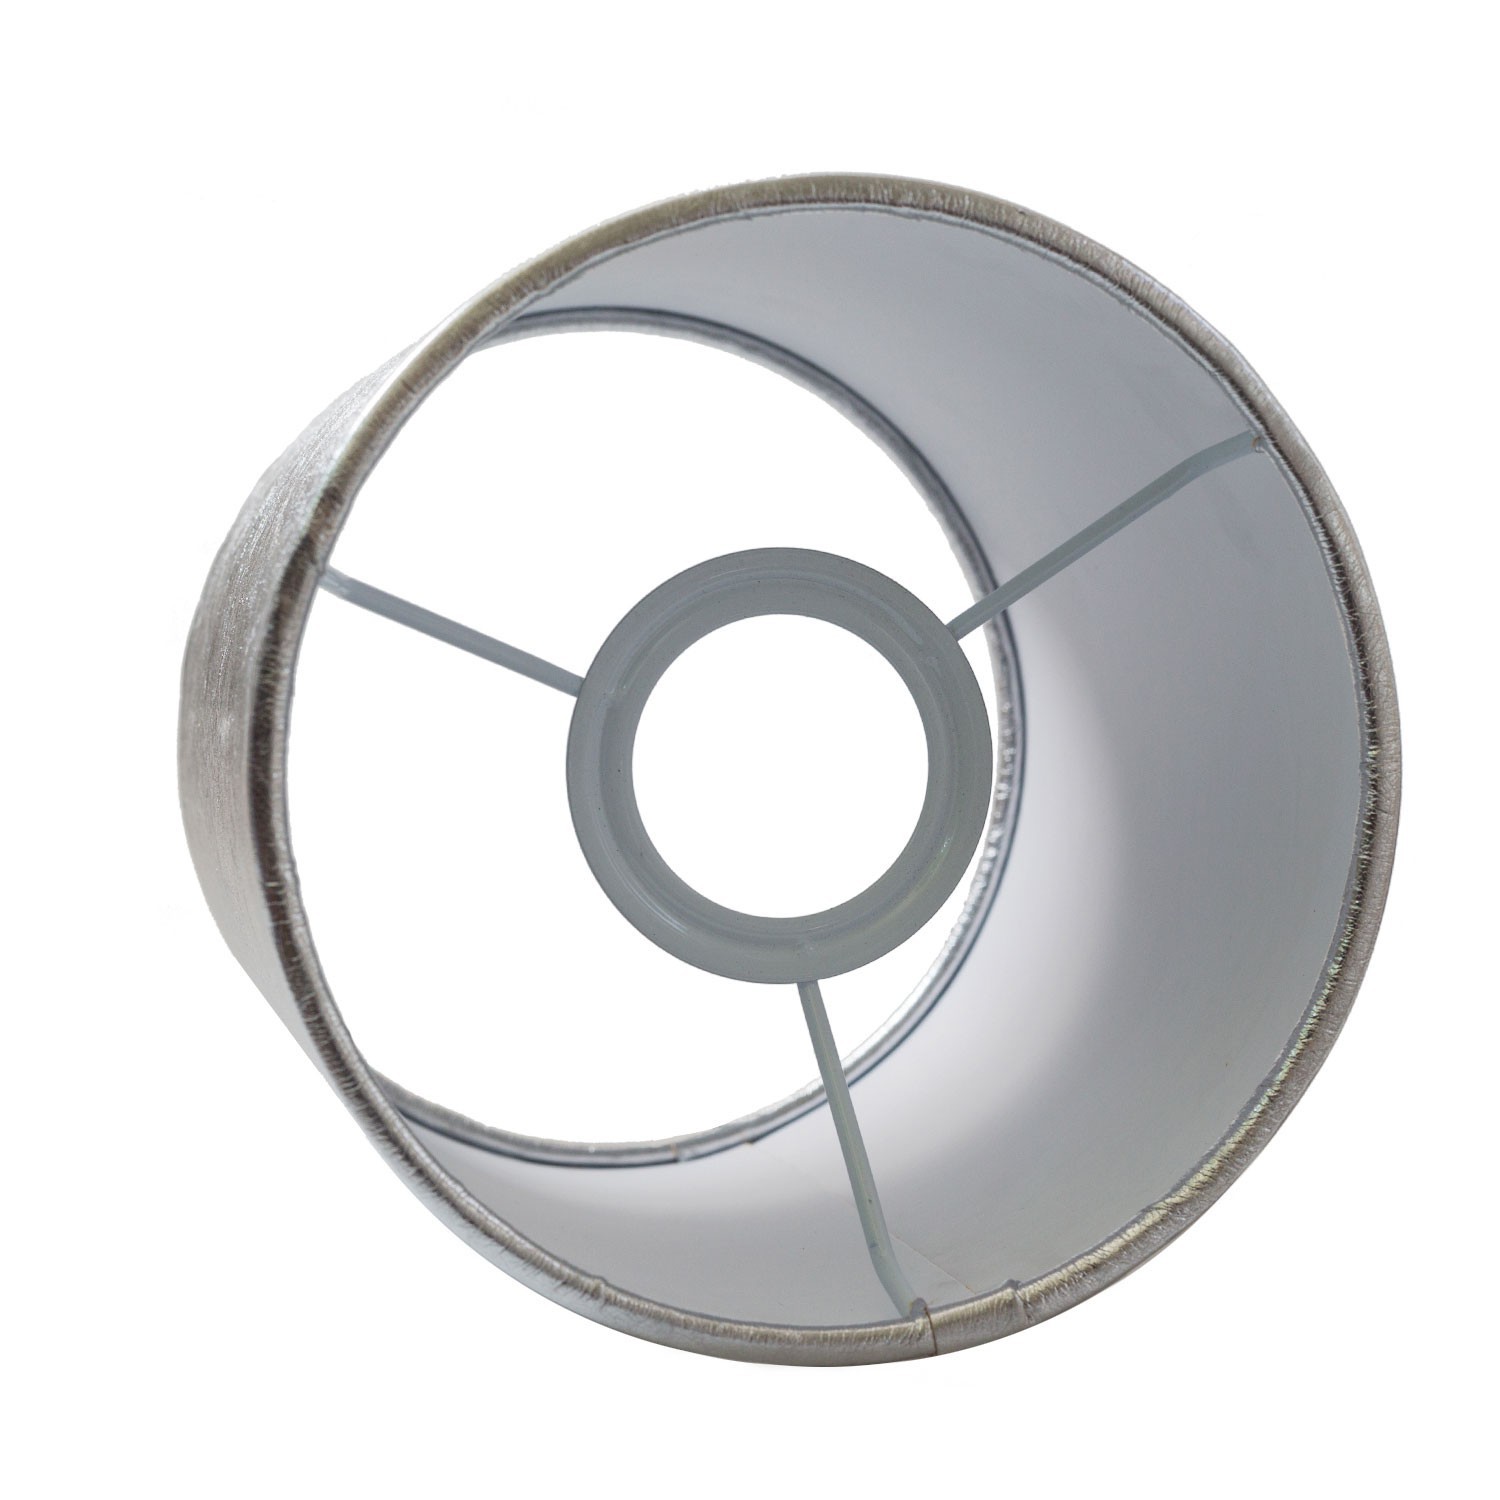 Pantalla de tela Cilindro casquillo E27, diámetro 15cm H18cm - 100% Fabricado en Italia